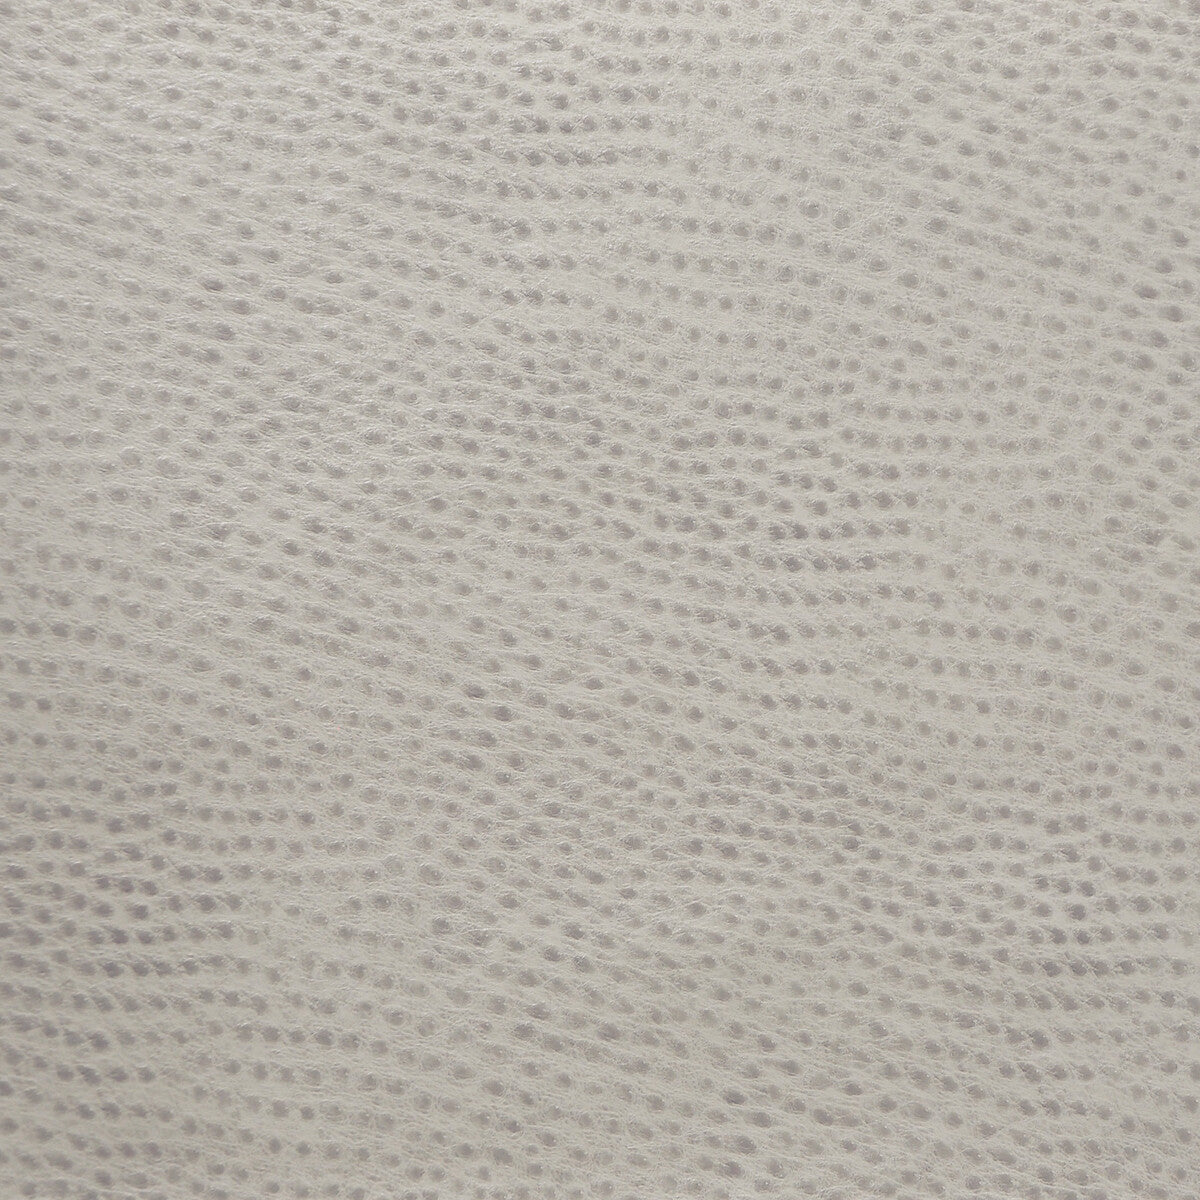 Kravet Design fabric in delaney-11 color - pattern DELANEY.11.0 - by Kravet Design